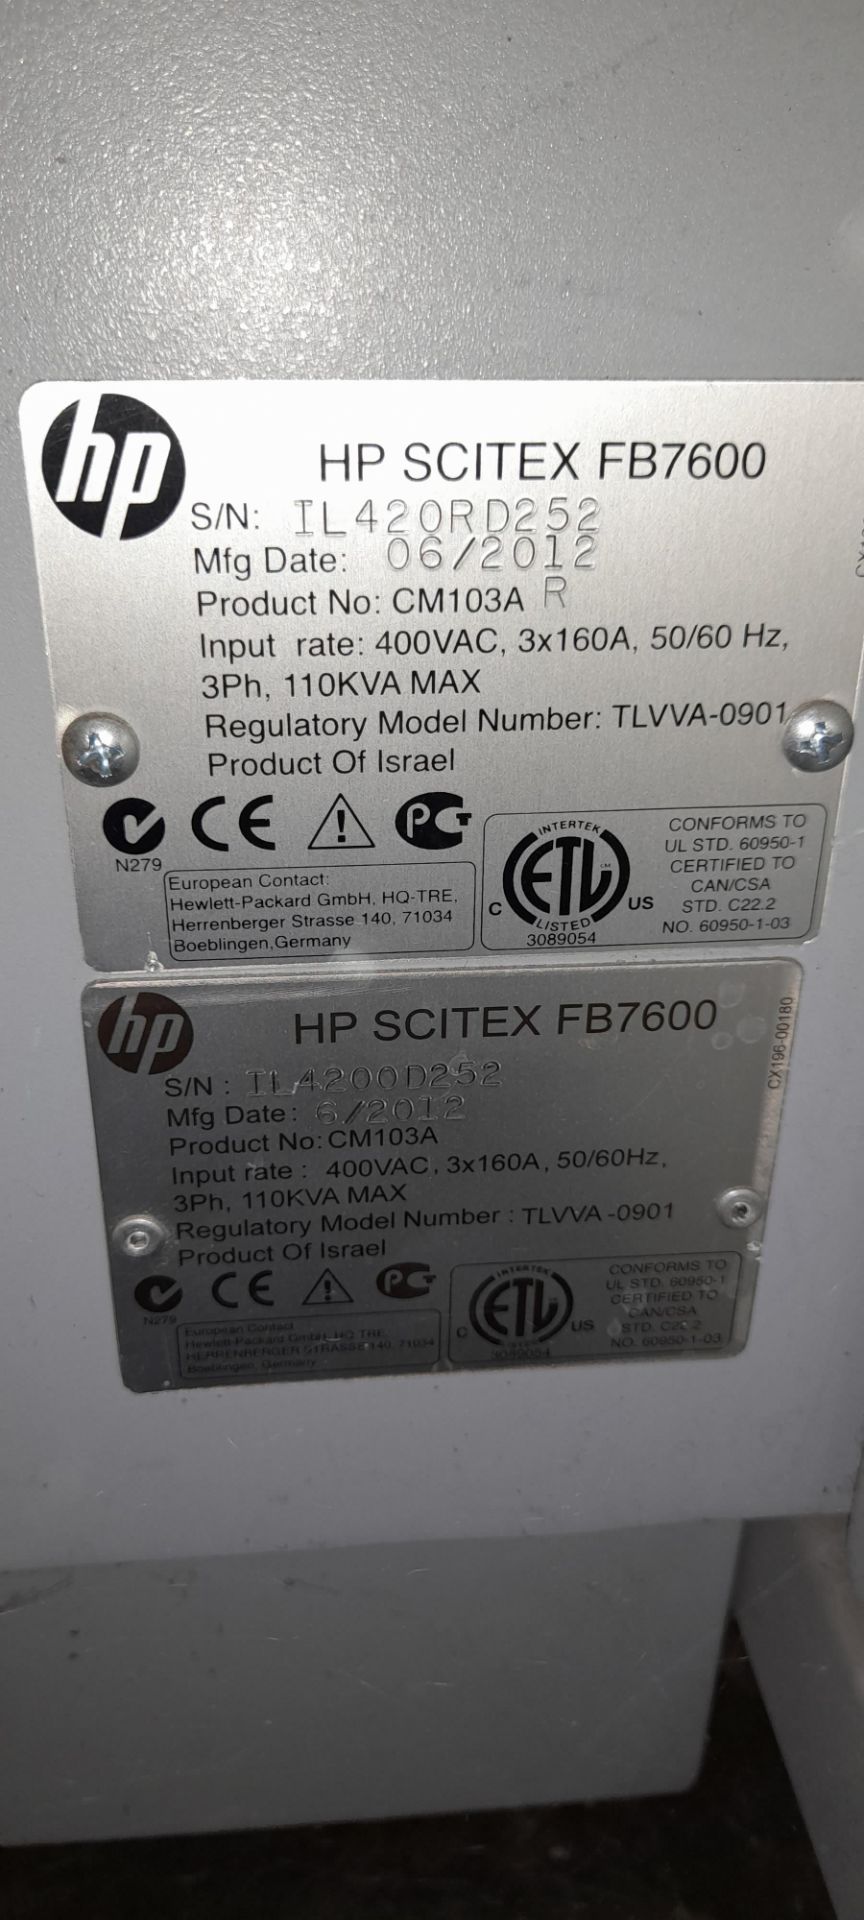 HP Scitex FB7600 Digital Printer. (06/2012) - Image 8 of 11